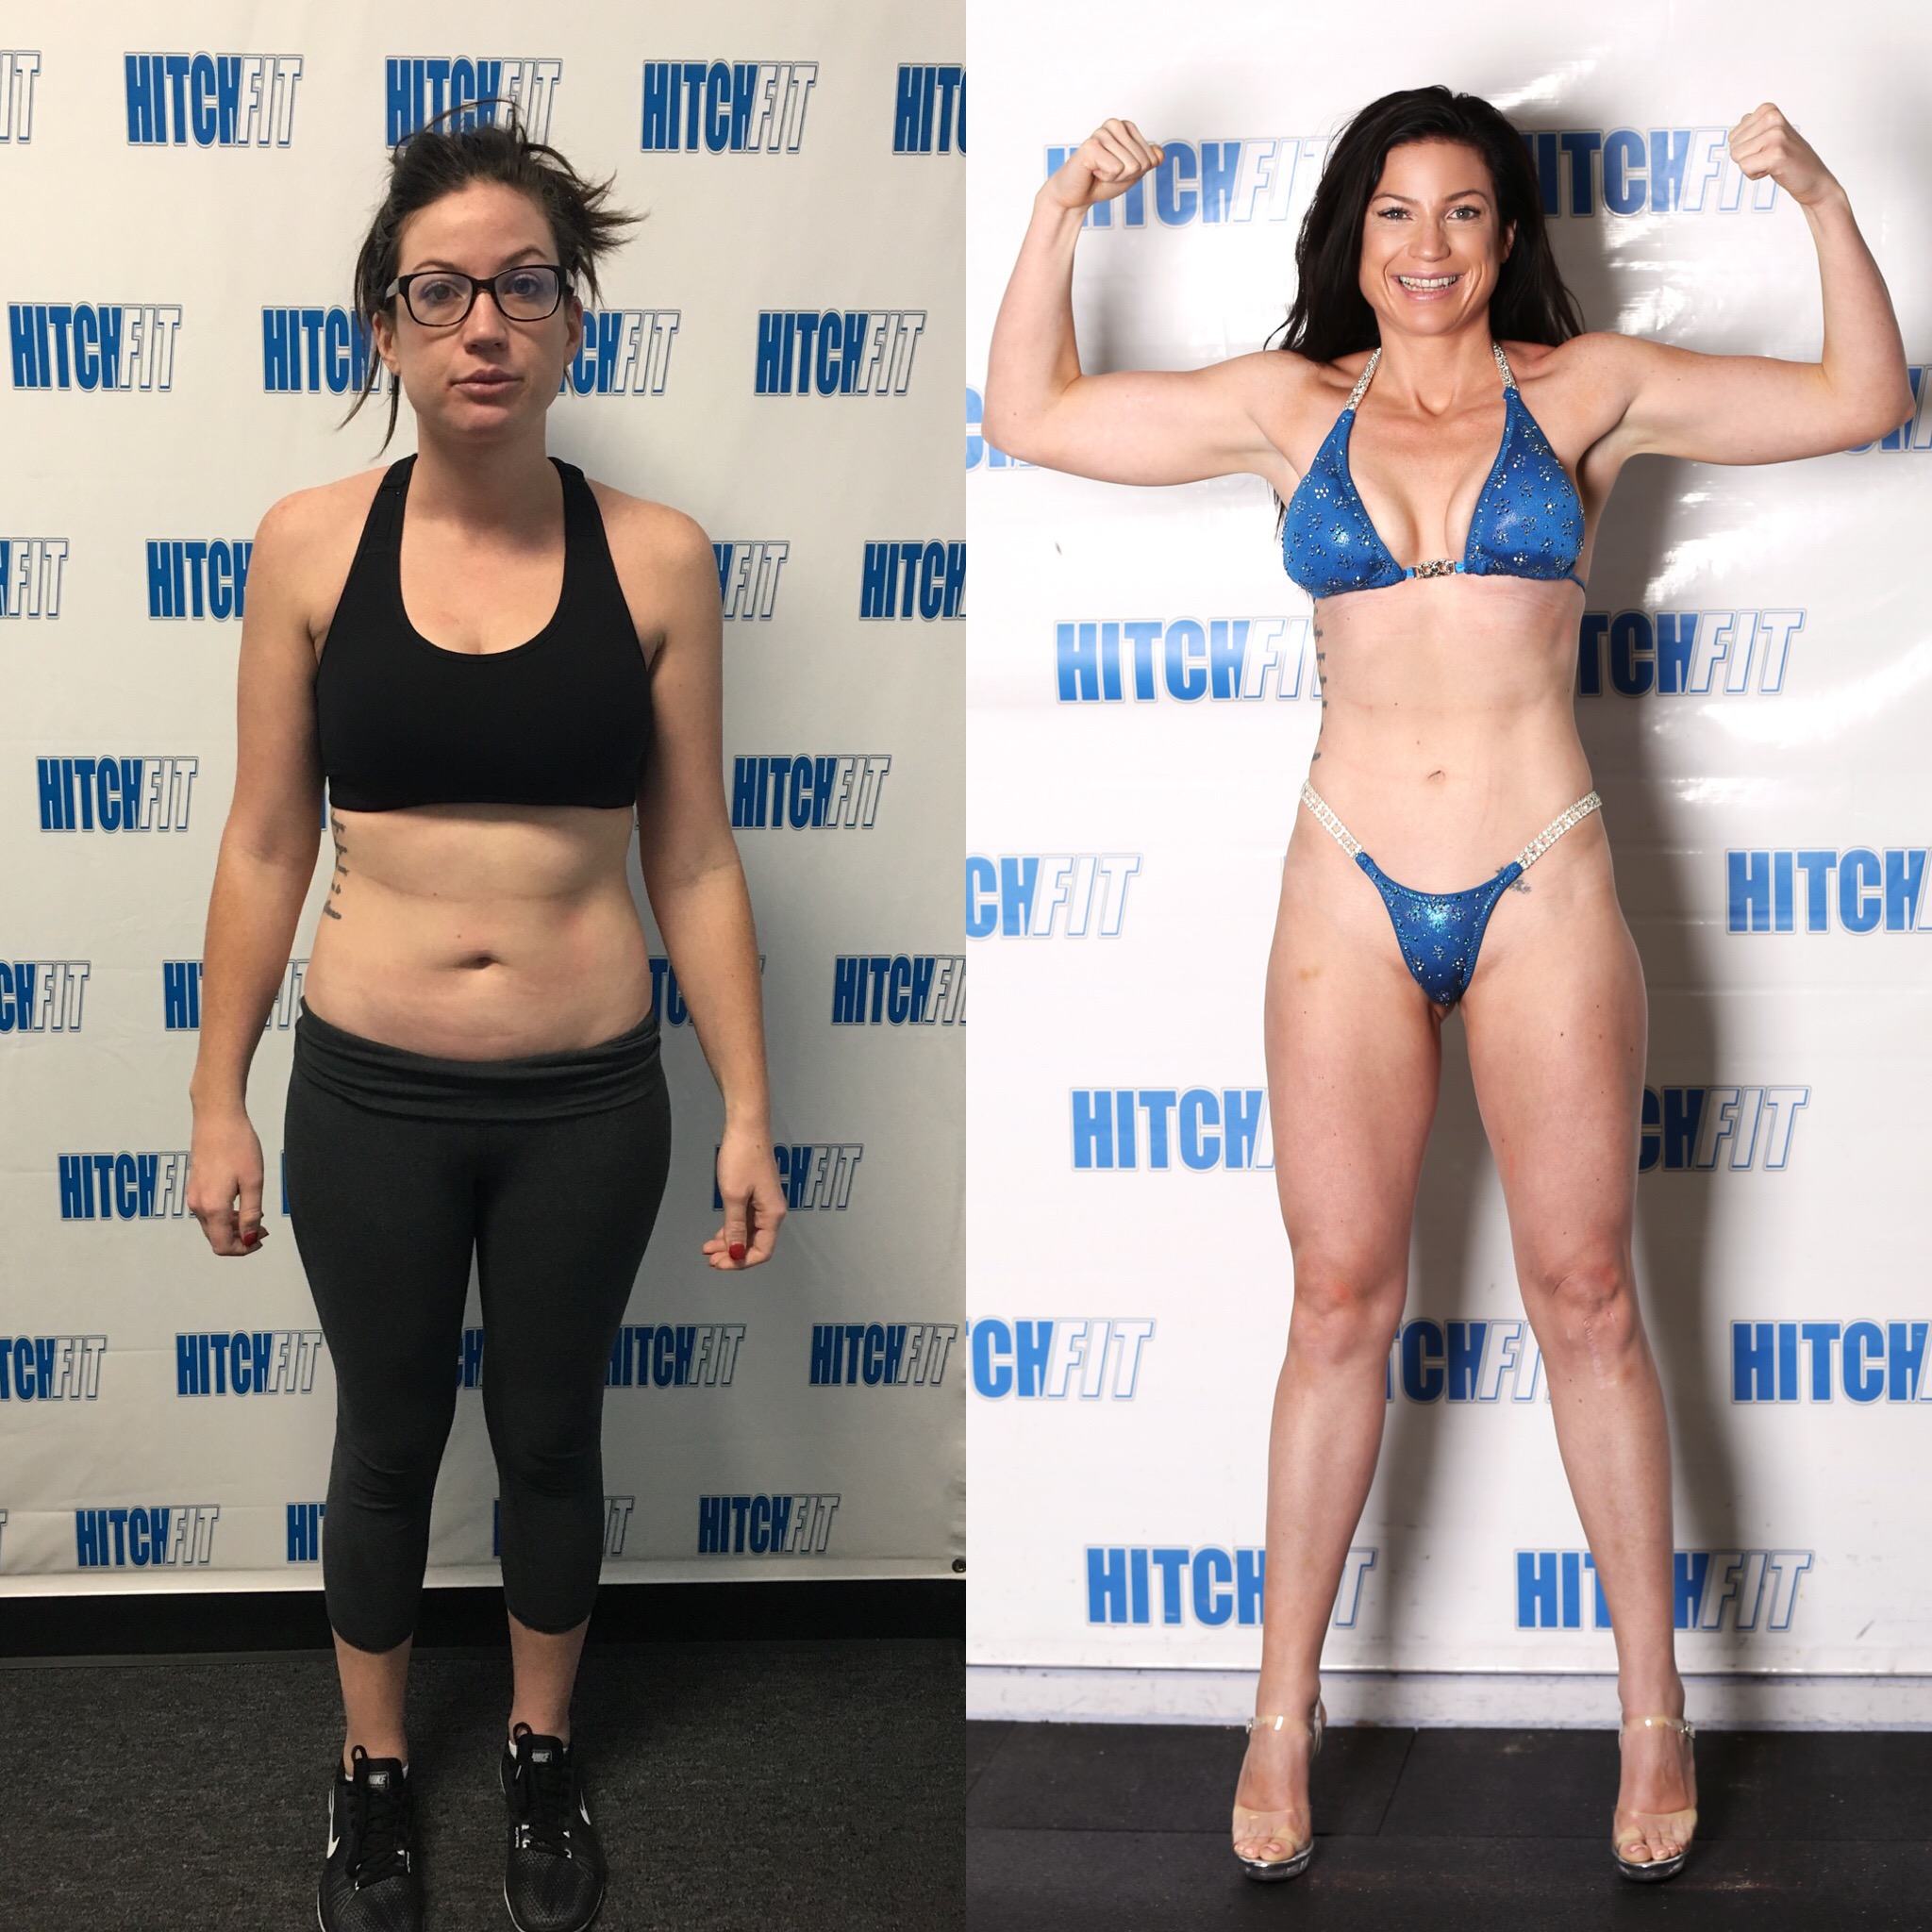 Sada Net zo Professor Bikini Body Transformation - Hitch Fit Gym